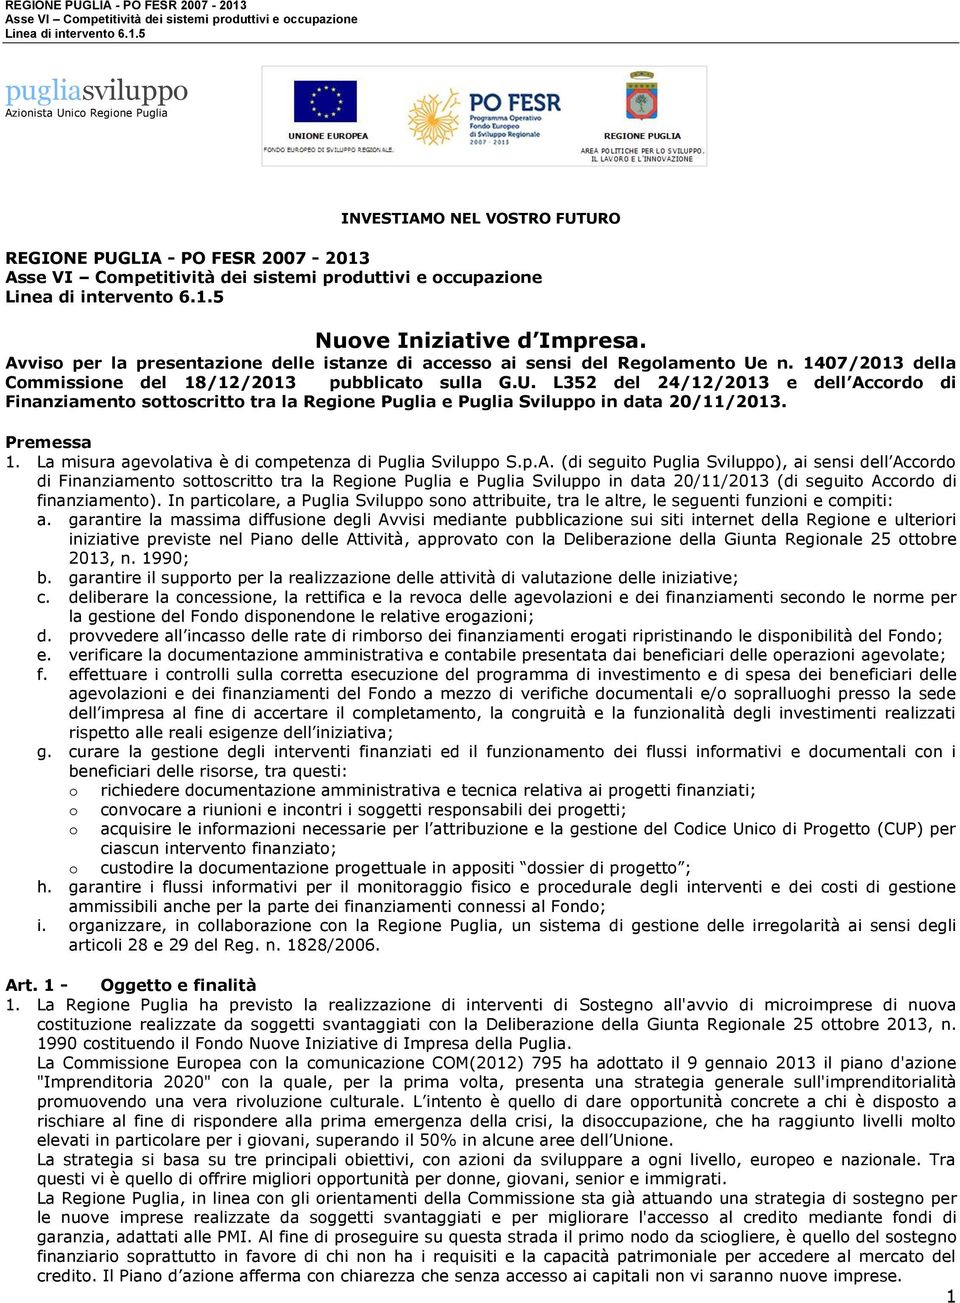 n. 1407/2013 della Commissione del 18/12/2013 pubblicato sulla G.U. L352 del 24/12/2013 e dell Accordo di Finanziamento sottoscritto tra la Regione Puglia e Puglia Sviluppo in data 20/11/2013.